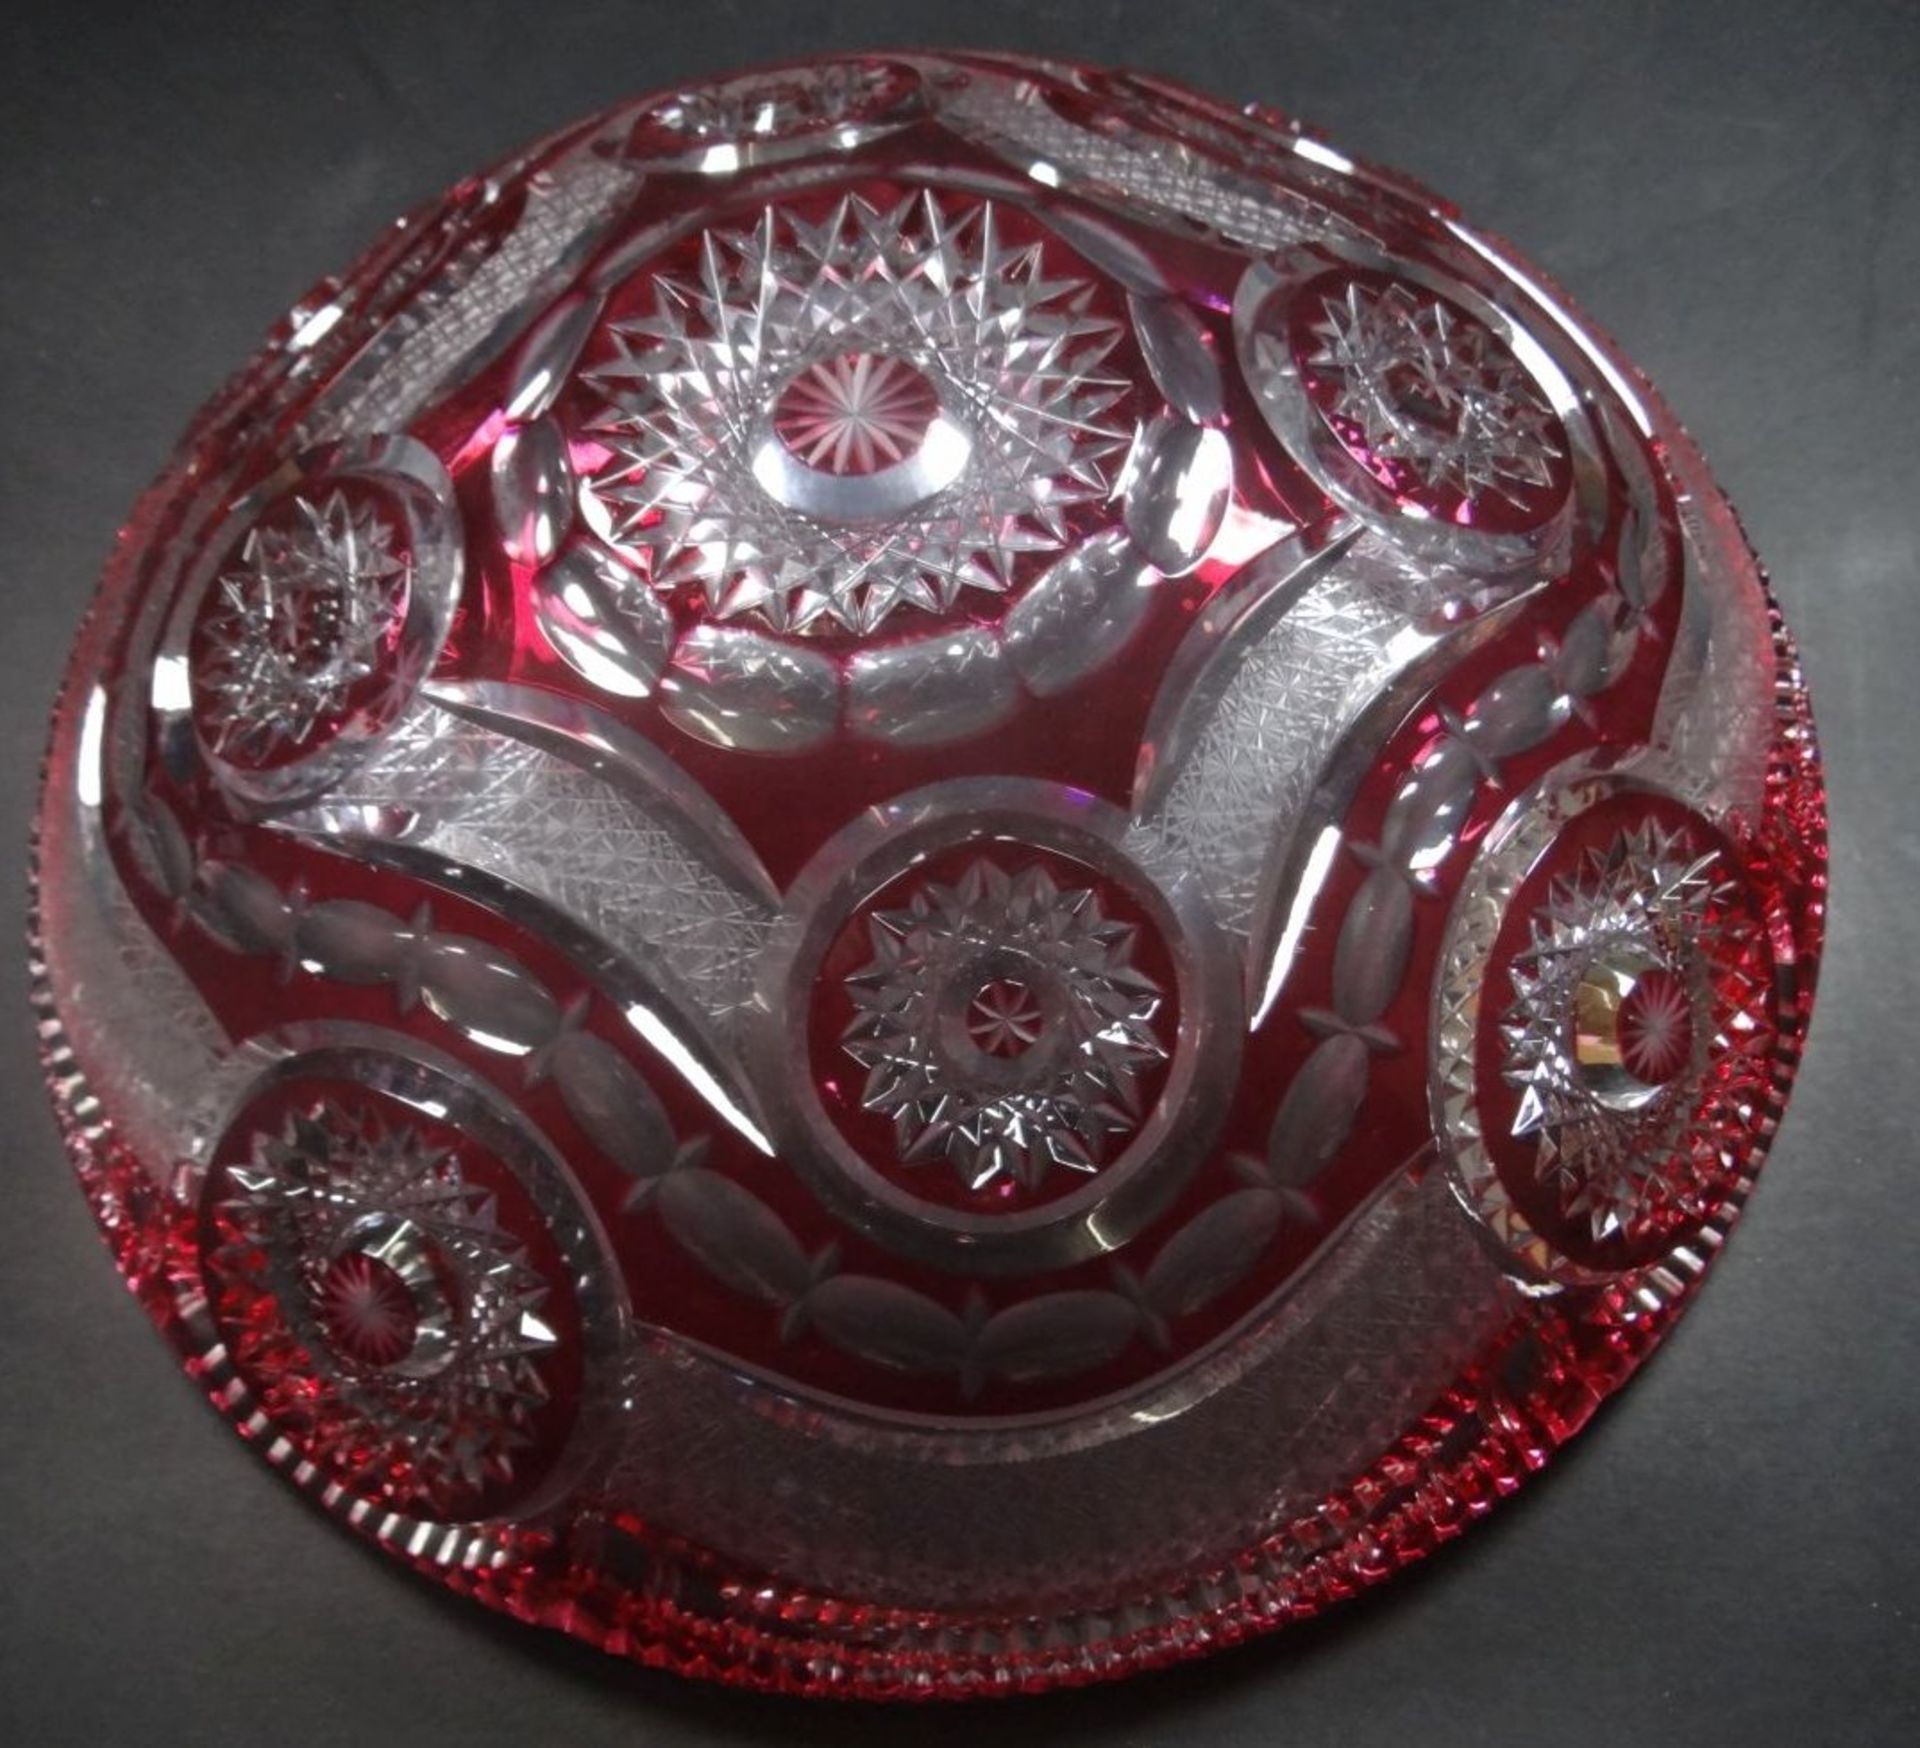 grosse, schwere Kristallschale, rot überfangen, wohl Val St.Lambert? H-11 cm, D-32 cm, pefekt - Bild 3 aus 4